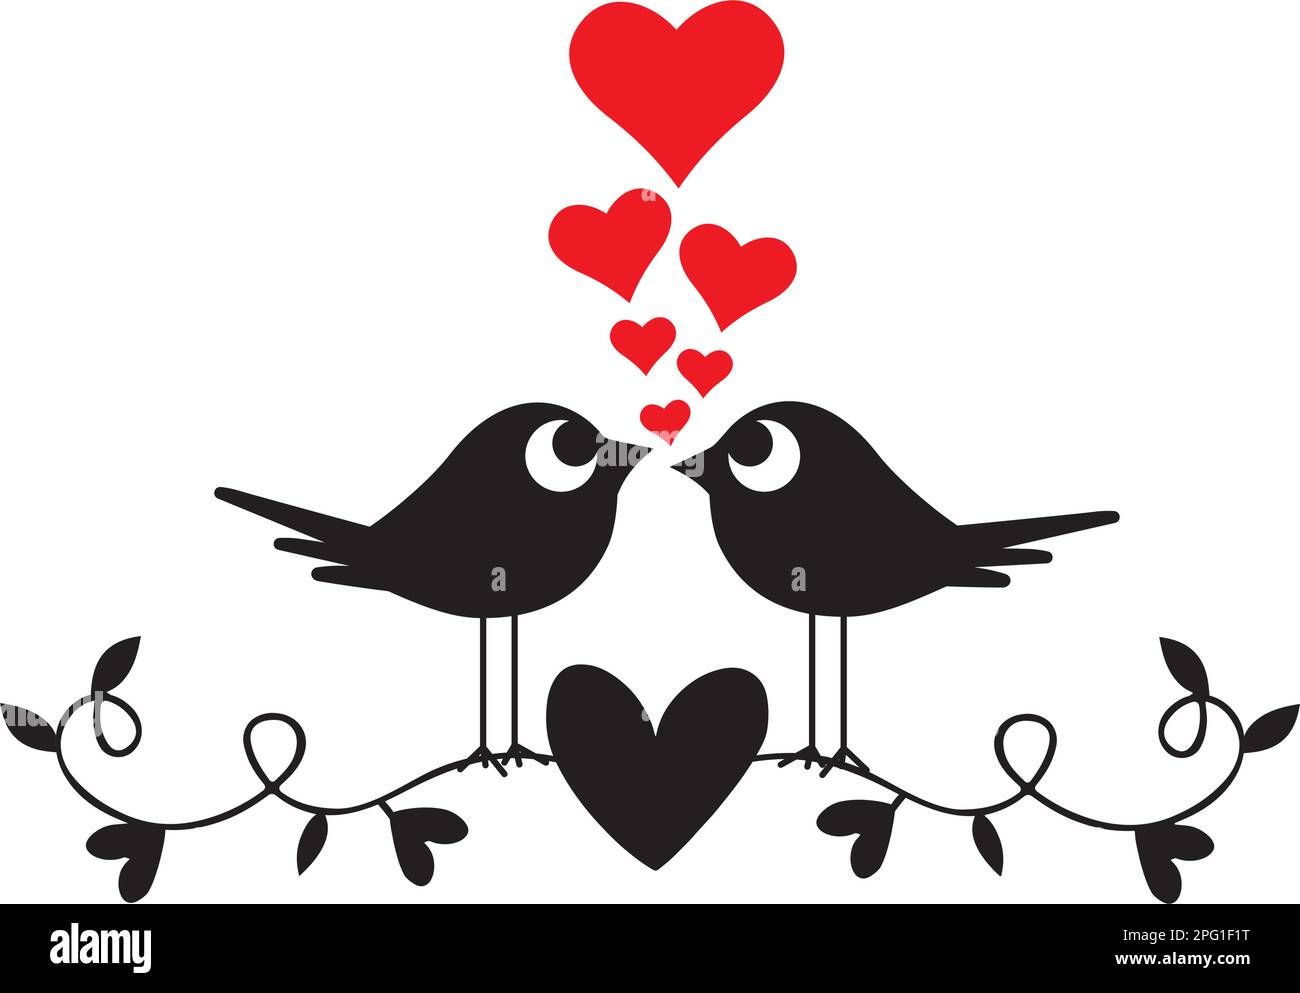 Vögel, zwei Silhouetten, Vektor. Ein Vogel, der ein Herz hält. Eine romantische, süße Zeichentrickfigur. Stock Vektor